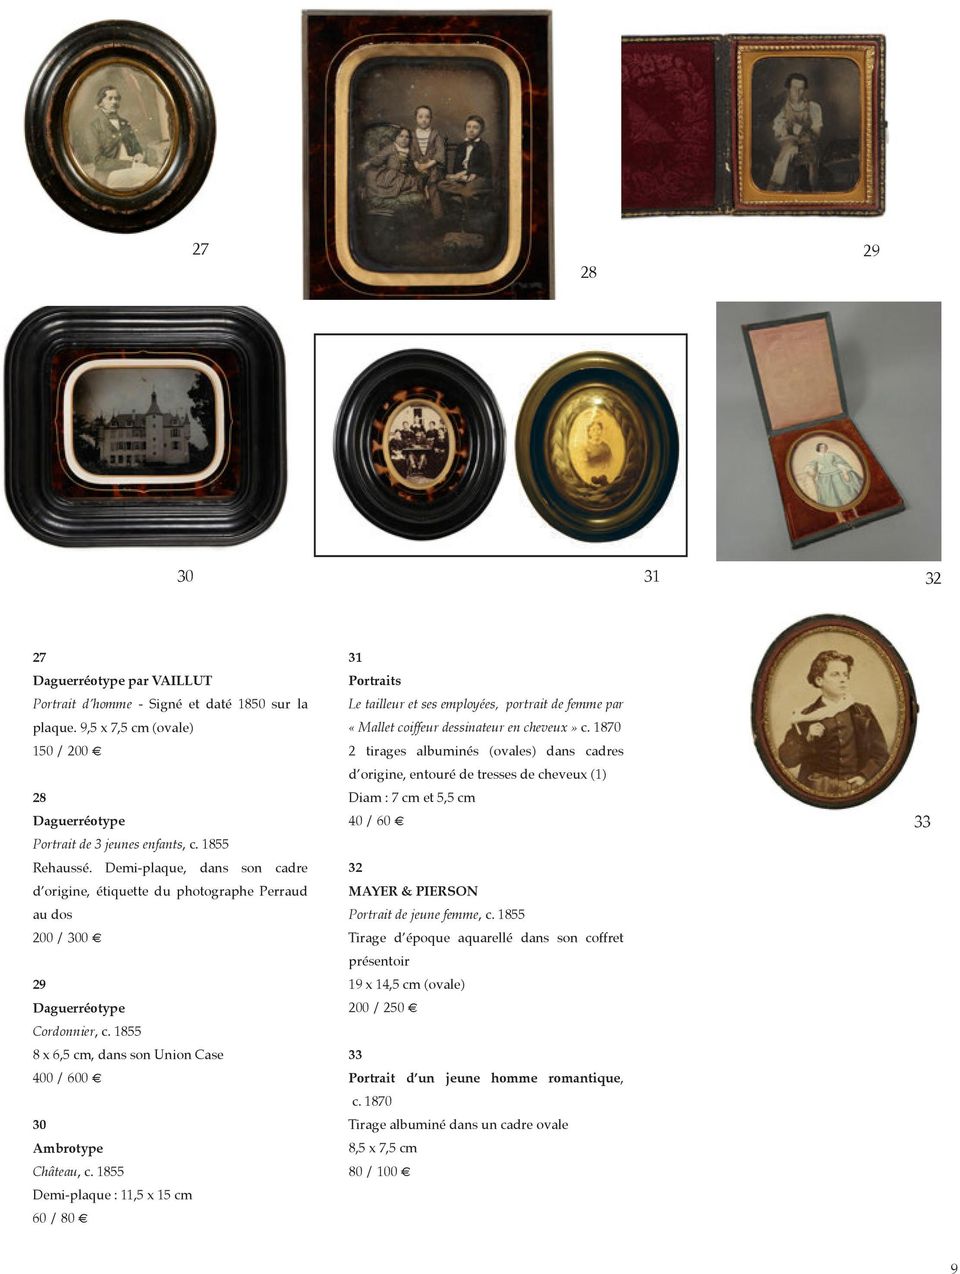 1855 Demi-plaque : 11,5 x 15 cm 60 / 80 31 Portraits Le tailleur et ses employées, portrait de femme par «Mallet coiffeur dessinateur en cheveux» c.